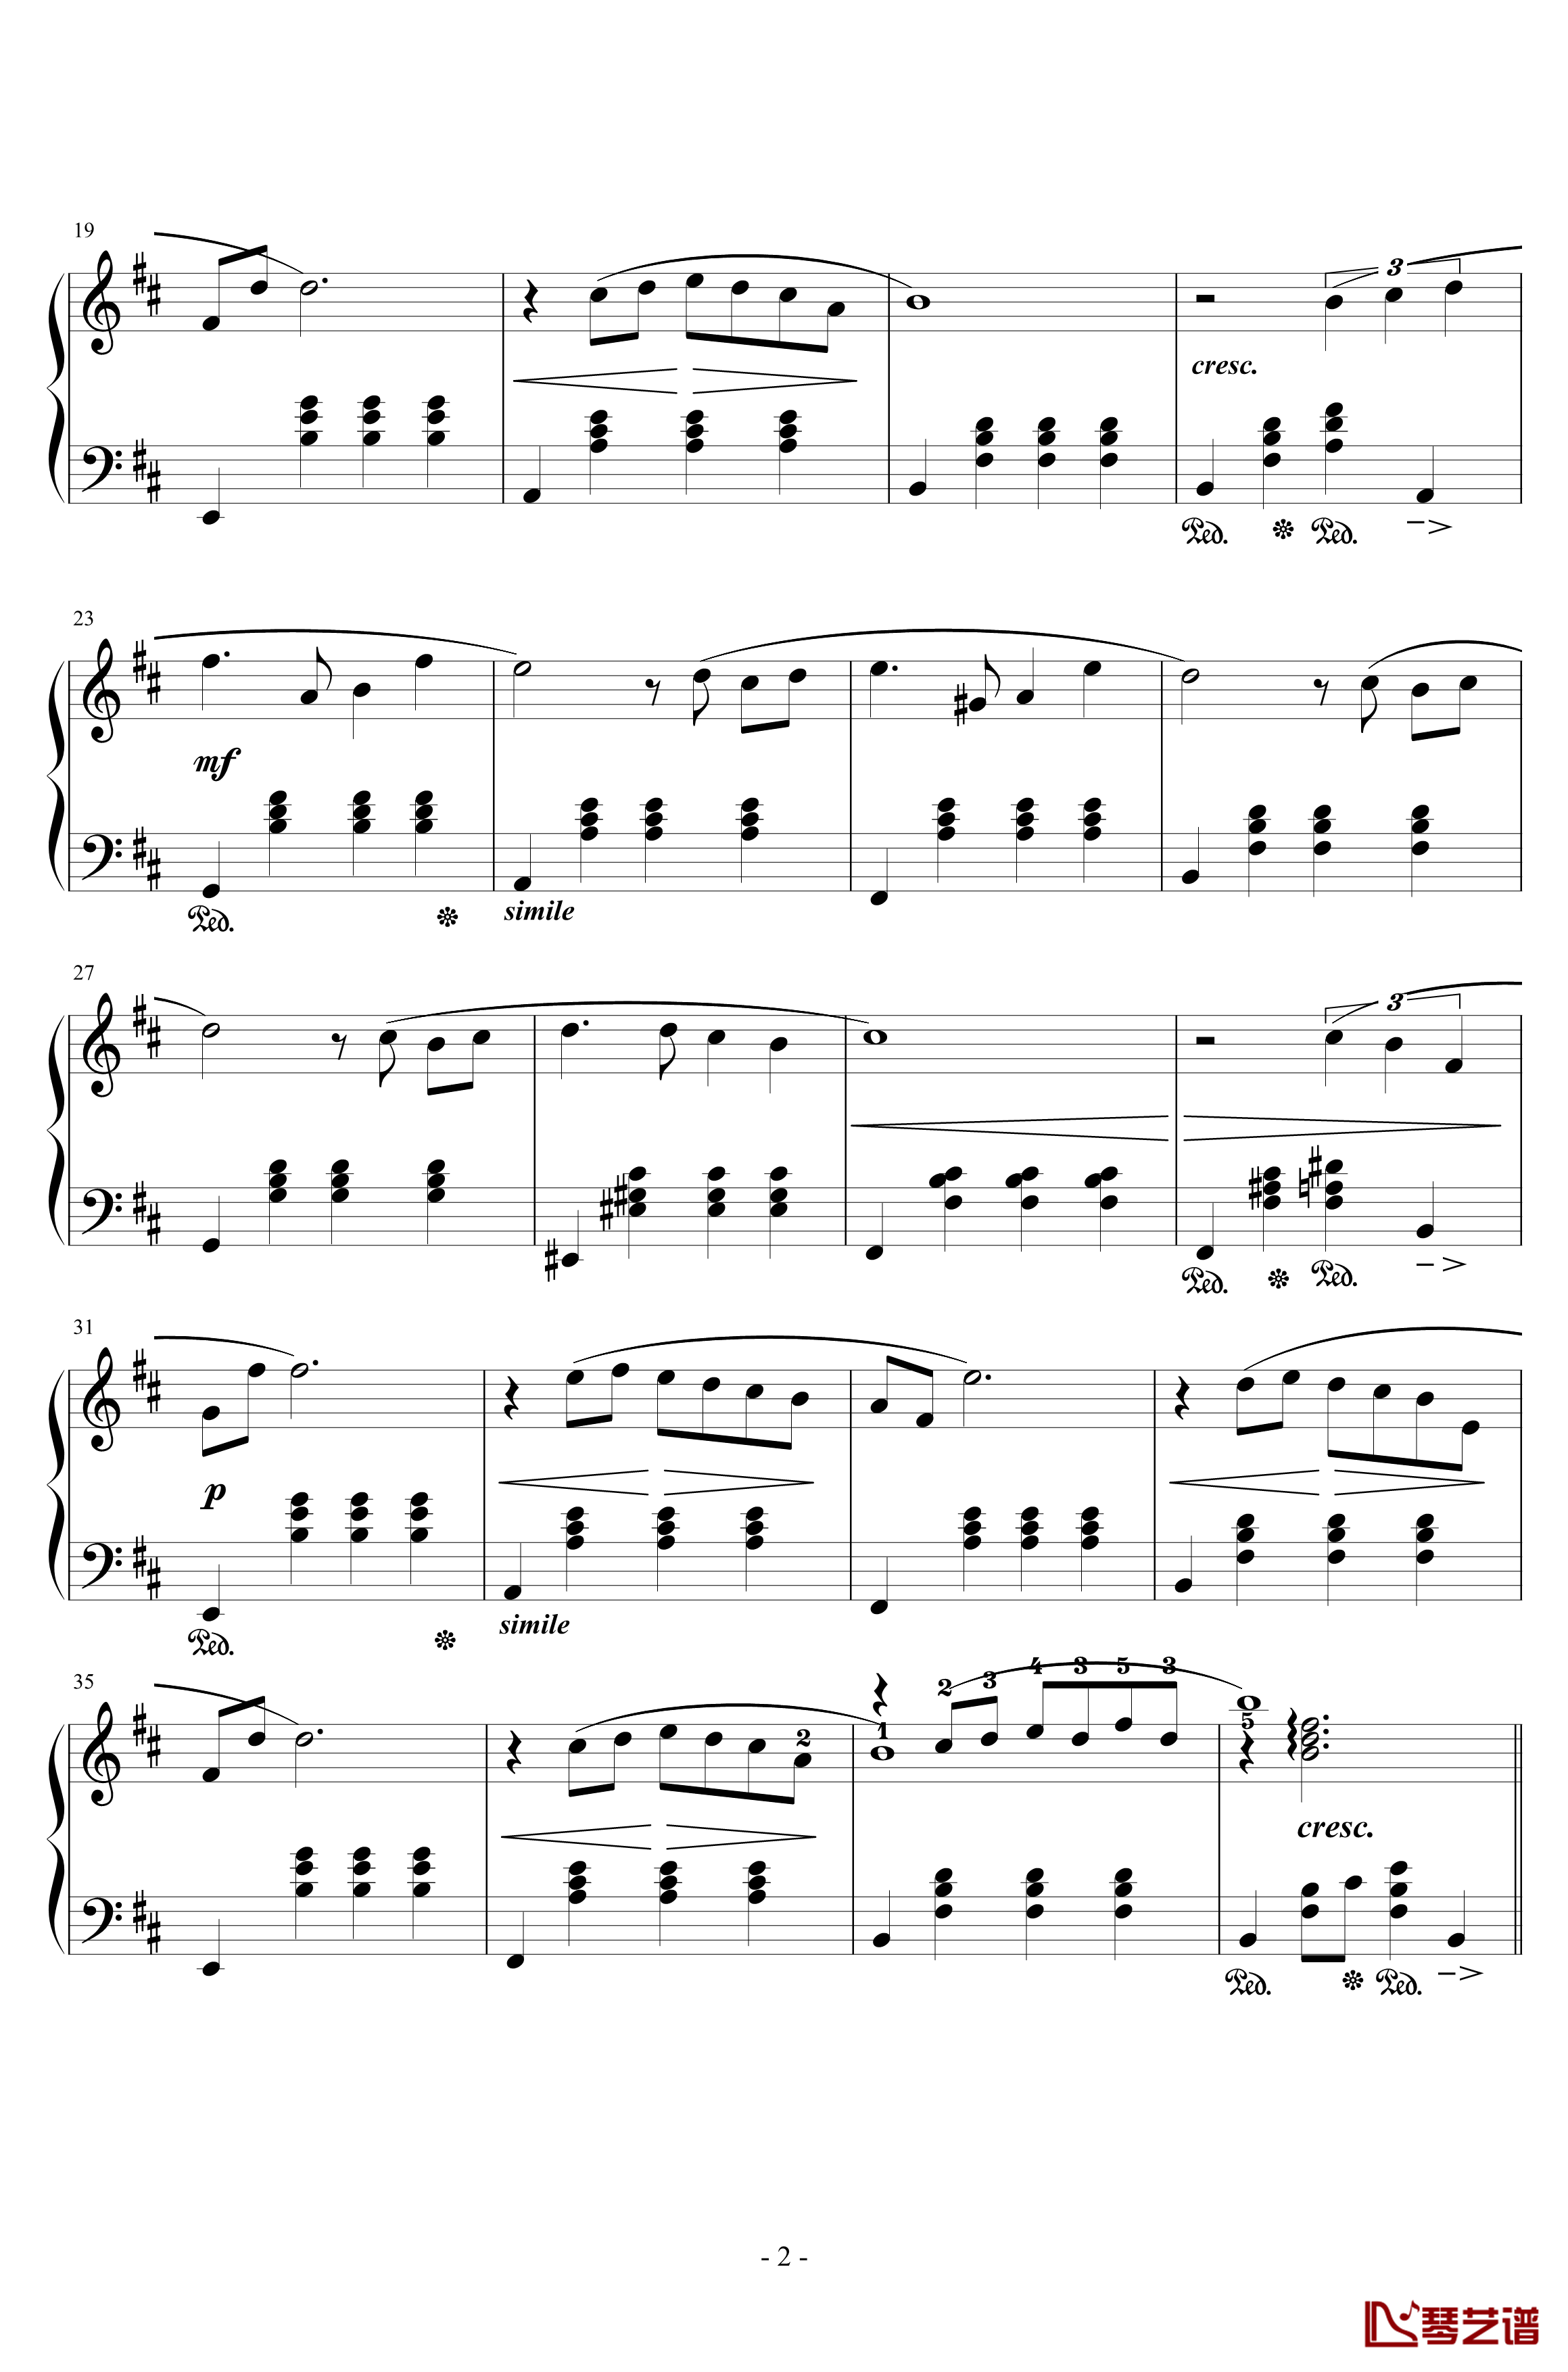 最终幻想4爱的主题钢琴谱-交响乐版改编-植松伸夫2